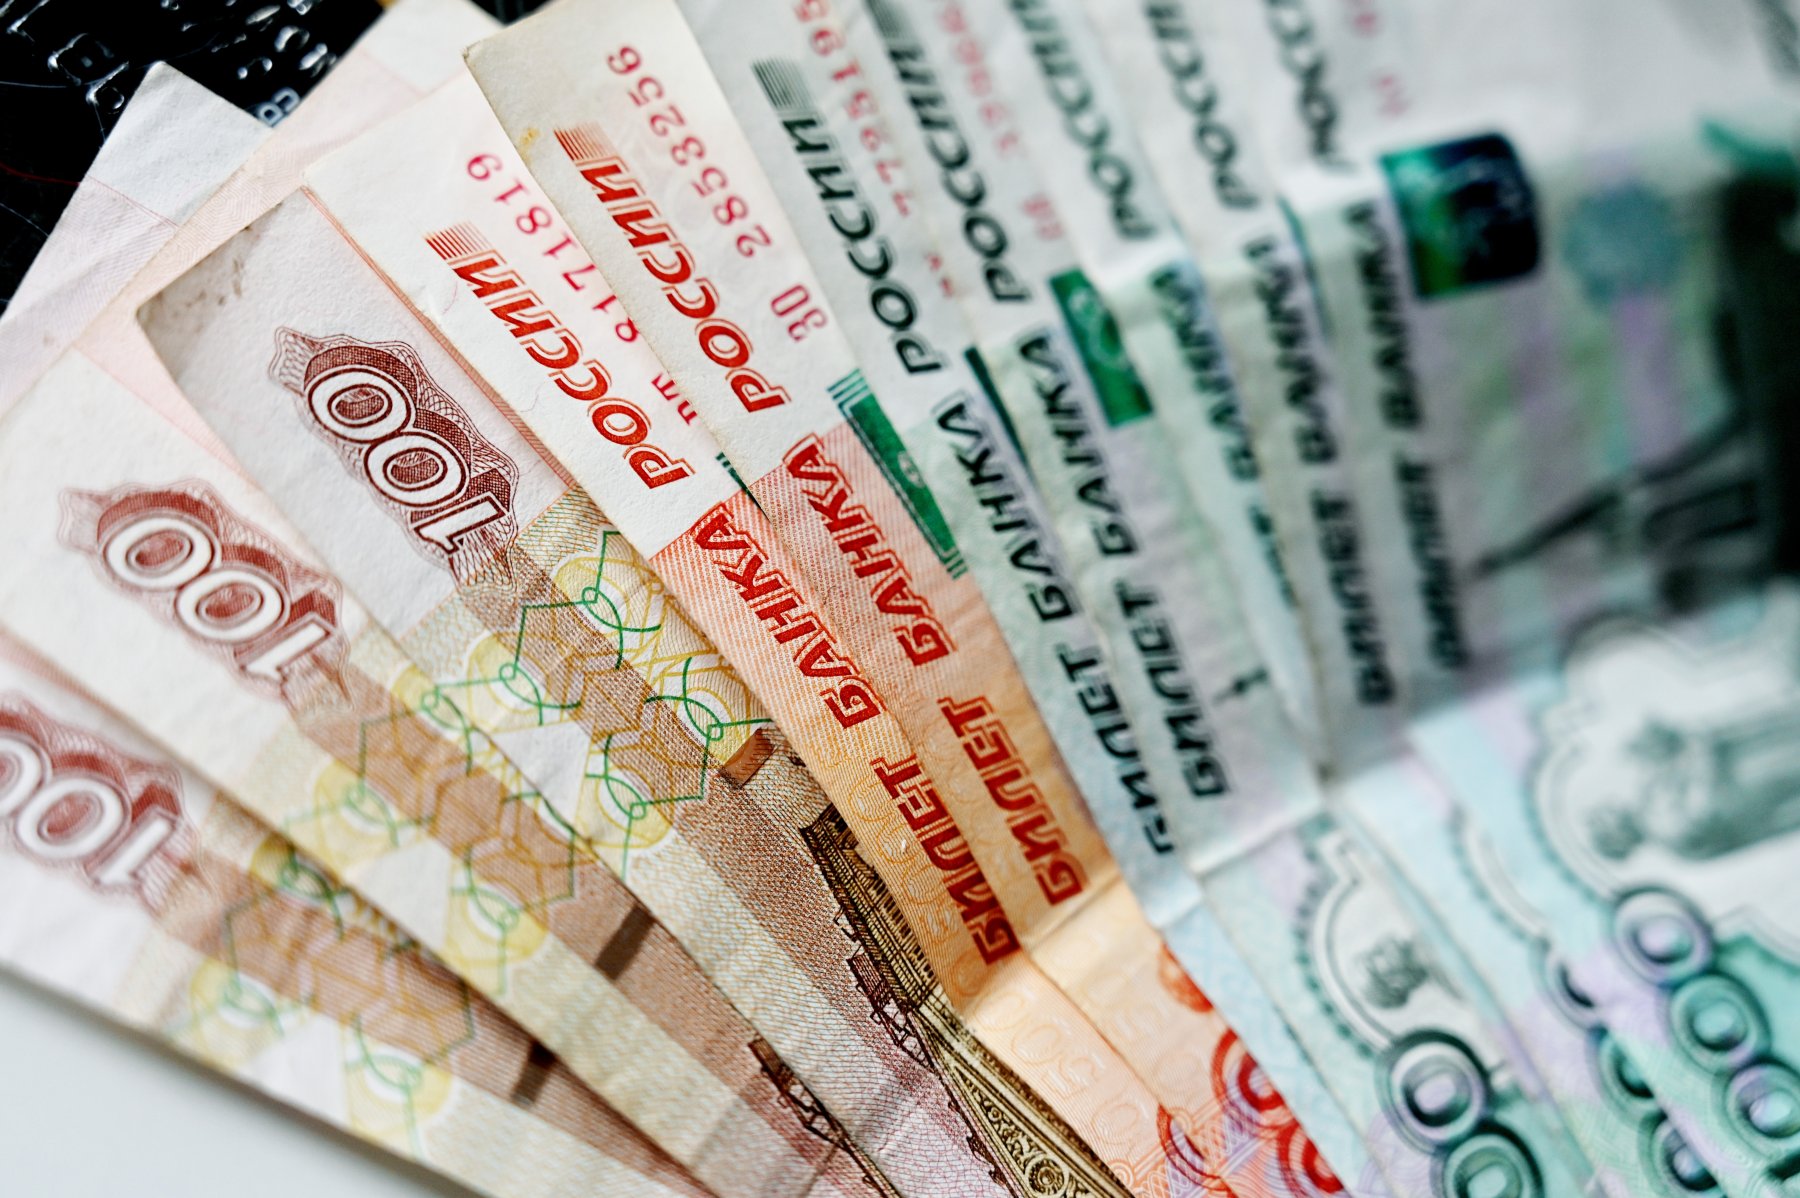 Пожилая москвичка выкинула мошенникам из окна 1,1 млн рублей 